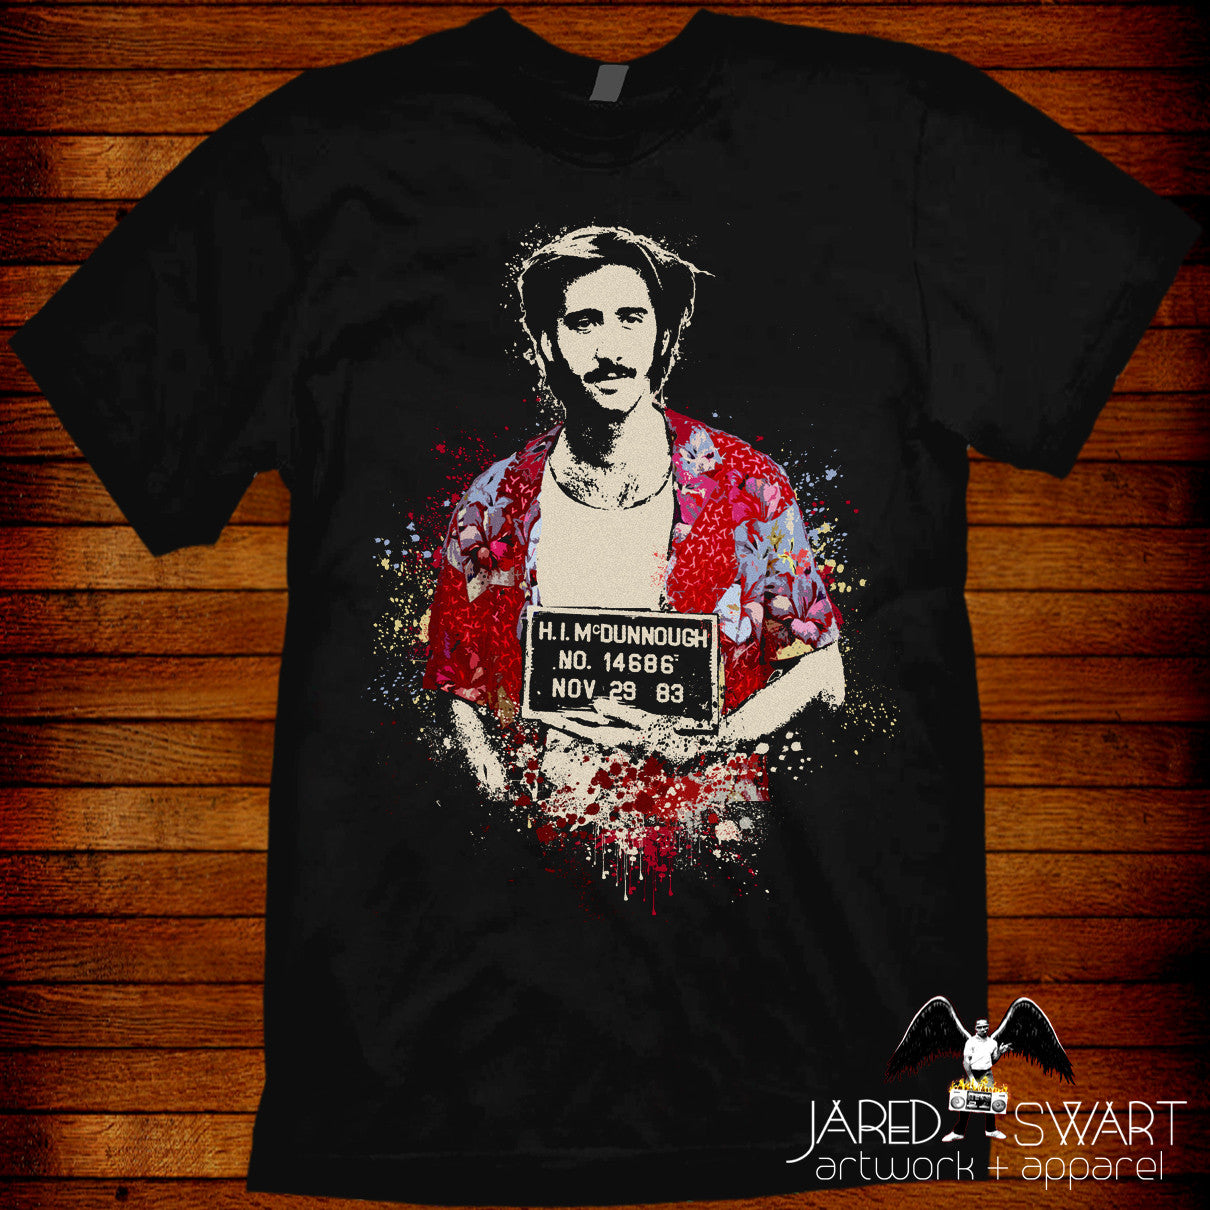 Coen b inspired artwork Jared 1987 T-shirt by Raising Arizona Swart – by